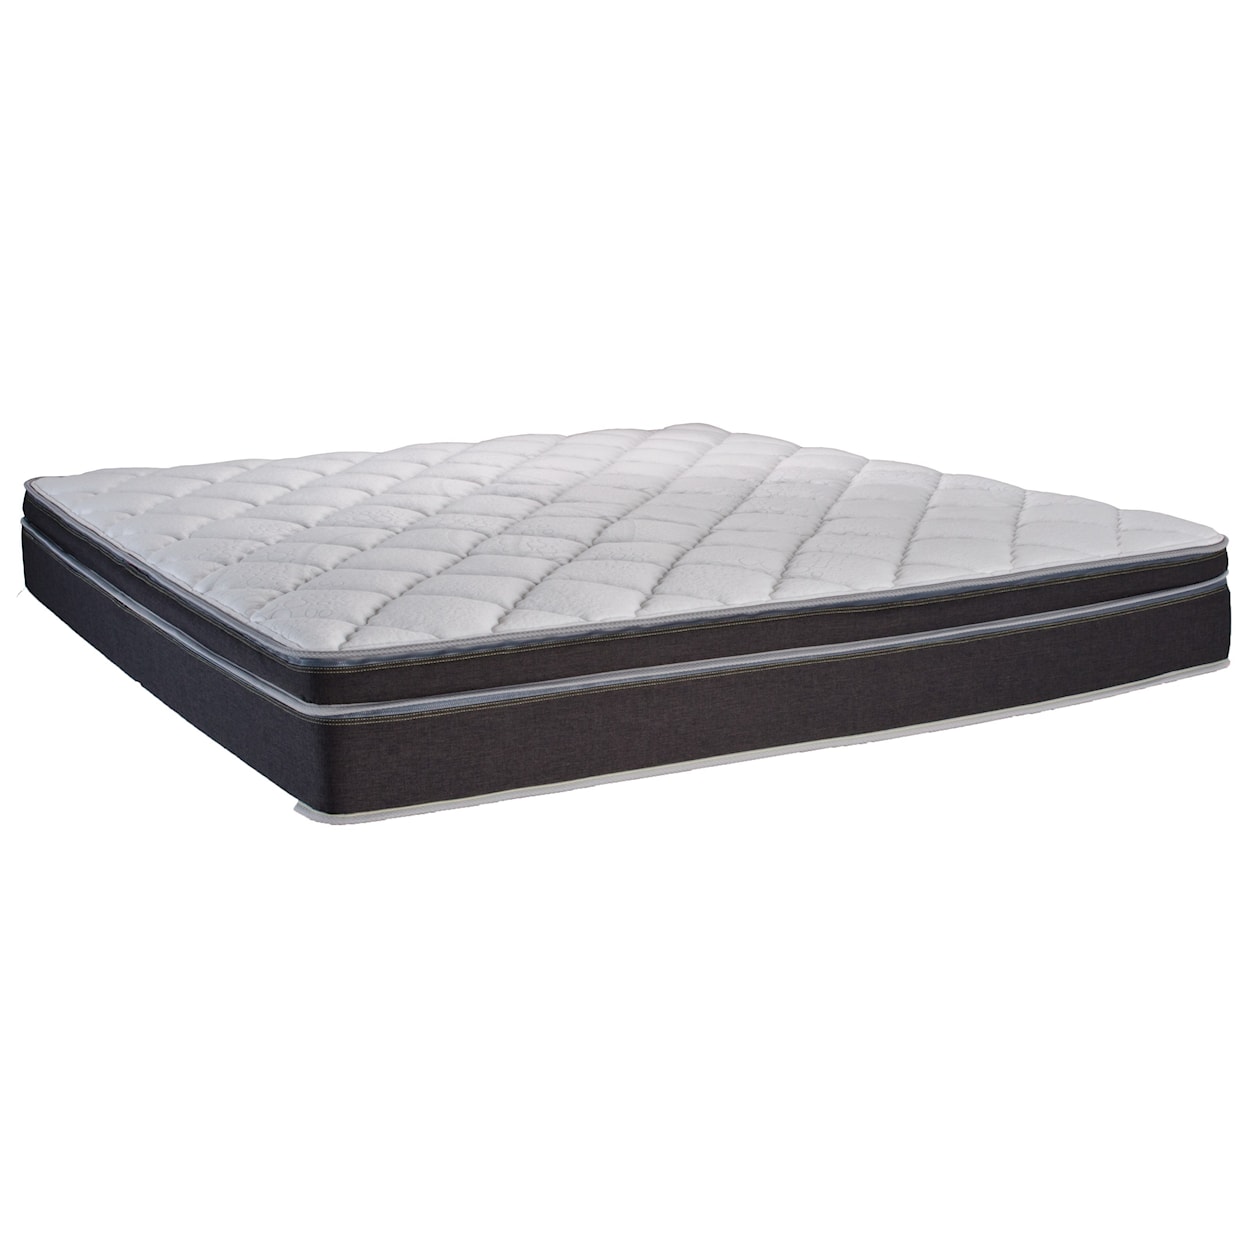 Instant Comfort Q5 InstantComfort Queen Dual Sleeper Q5 Pillow Top Mattress